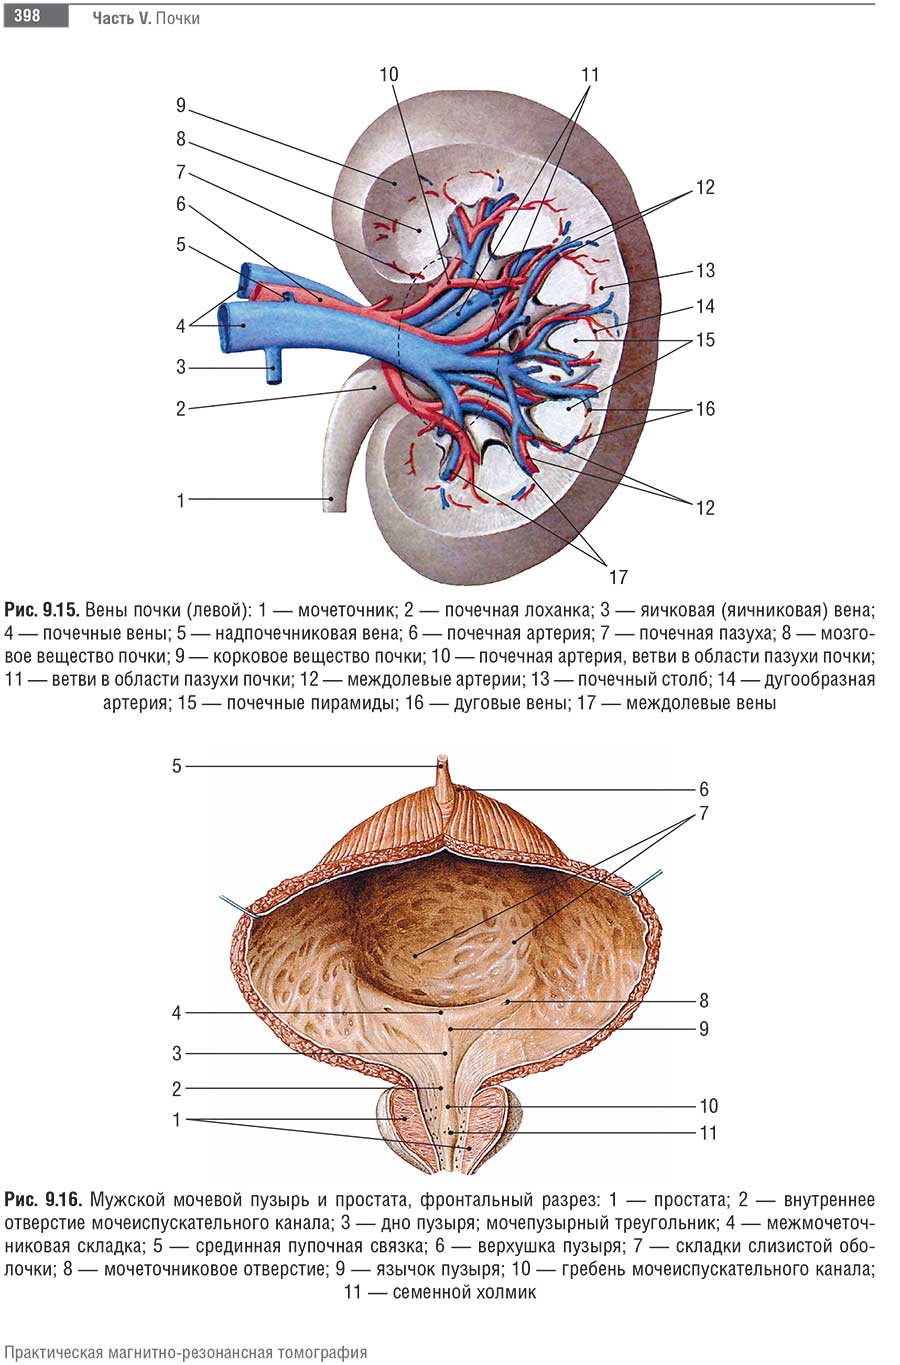 Мужской мочевой пузырь и простата, фронтальный разрез